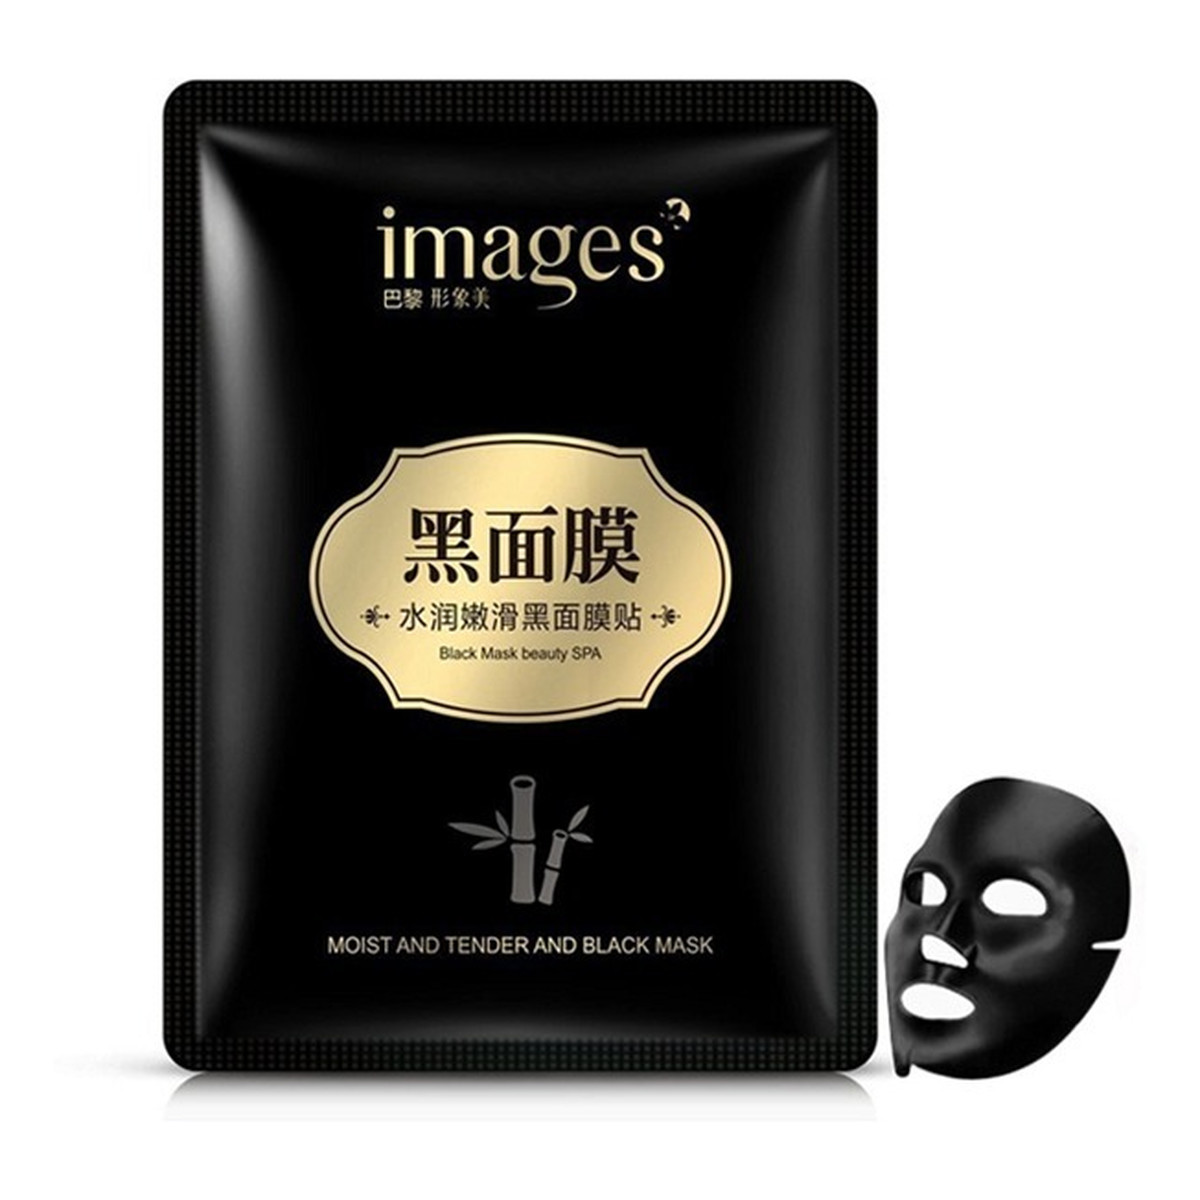 Images Moist And Tender And Black Mask Oczyszczająca Czarna Maska W Płacie 30g